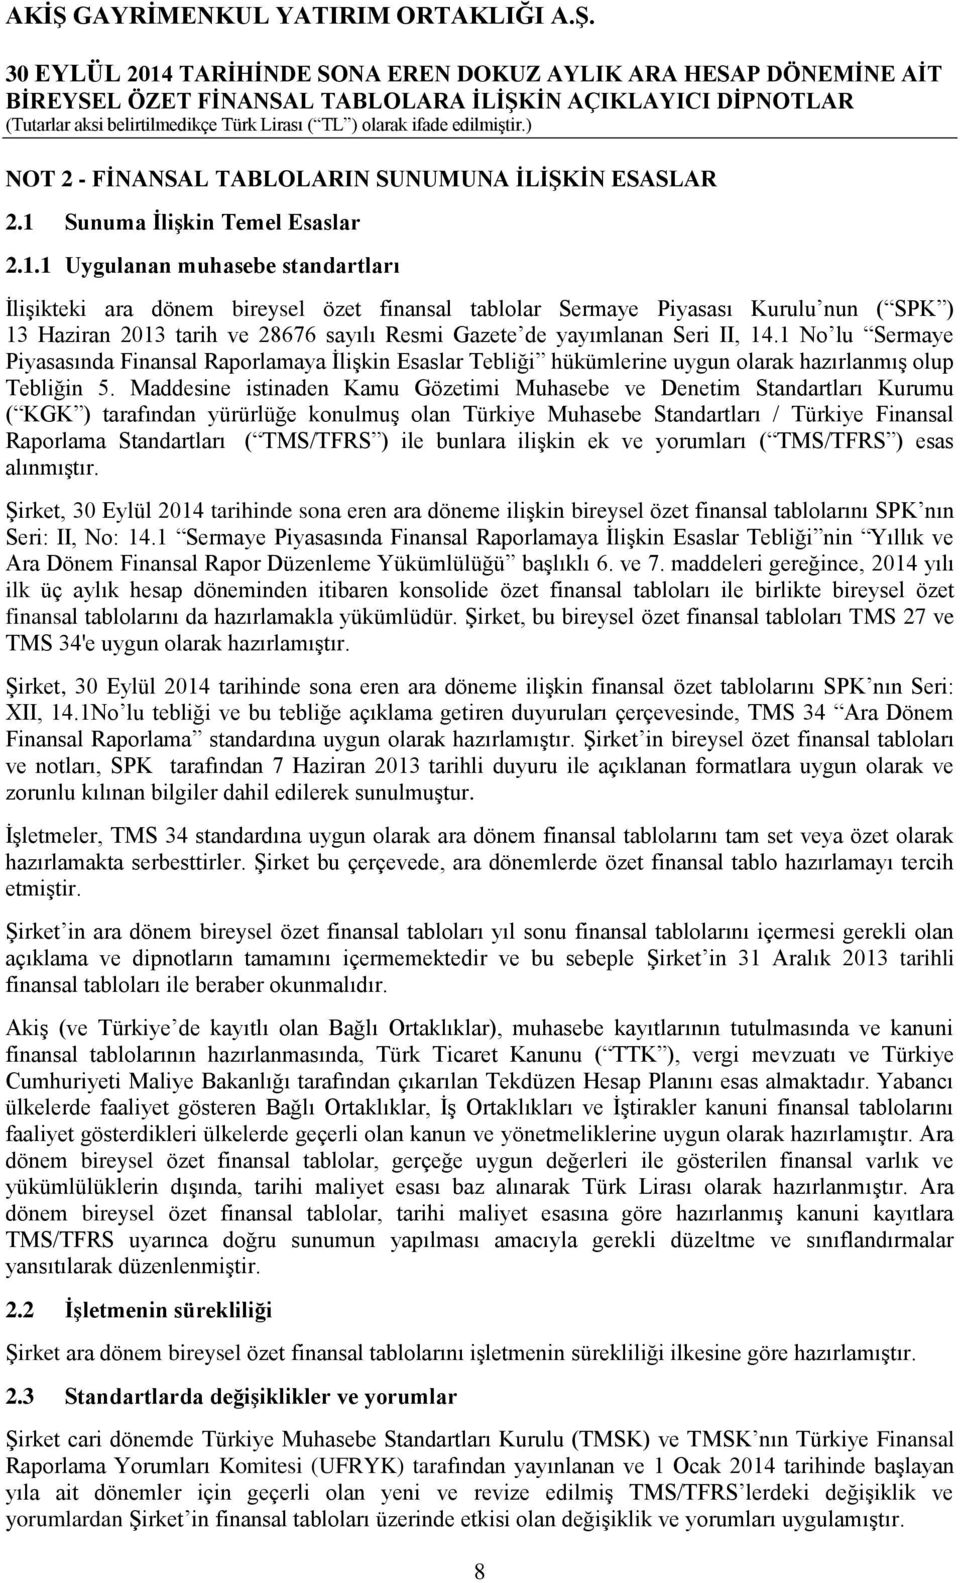 1 Uygulanan muhasebe standartları ĠliĢikteki ara dönem bireysel özet finansal tablolar Sermaye Piyasası Kurulu nun ( SPK ) 13 Haziran 2013 tarih ve 28676 sayılı Resmi Gazete de yayımlanan Seri II, 14.